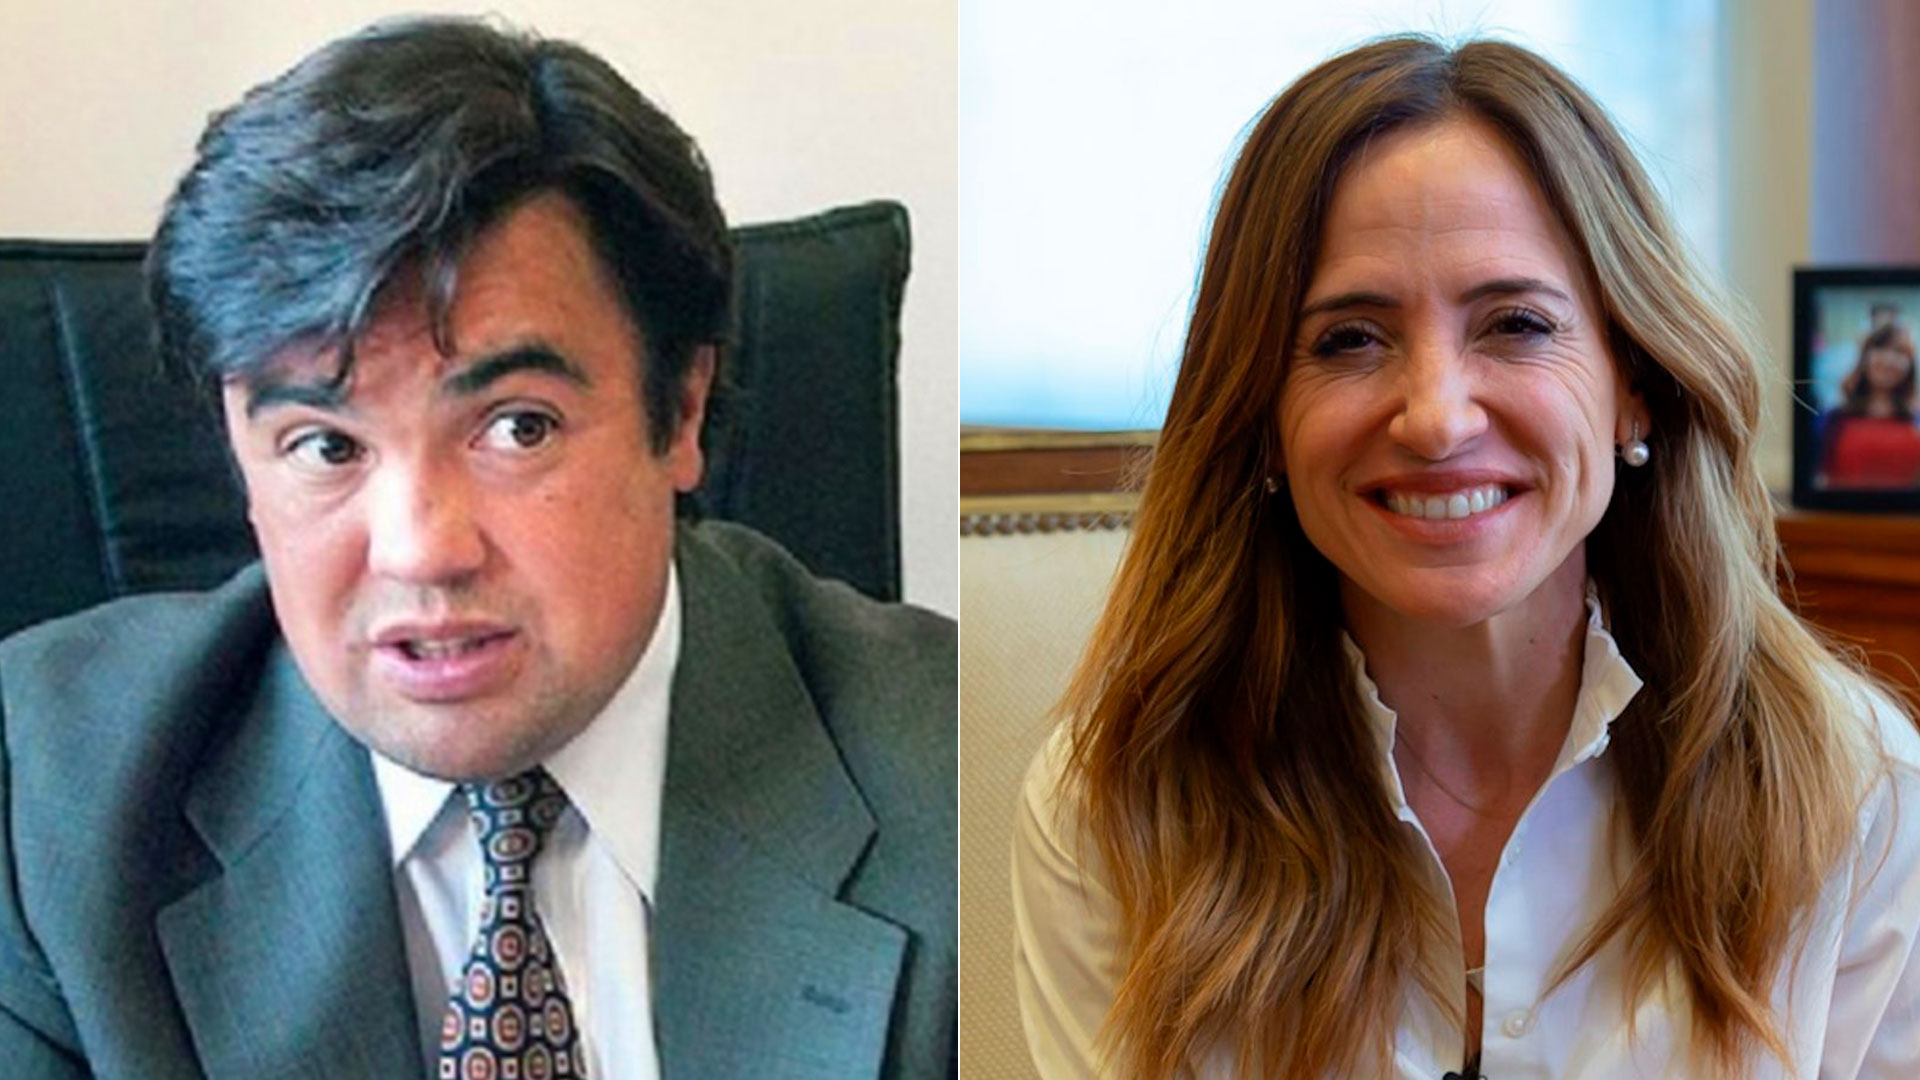 El fiscal Guillermo Marijuán denunciará a la ministra de Desarrollo Social, Victoria Tolosa Paz por presunto mal desempeño en sus funciones